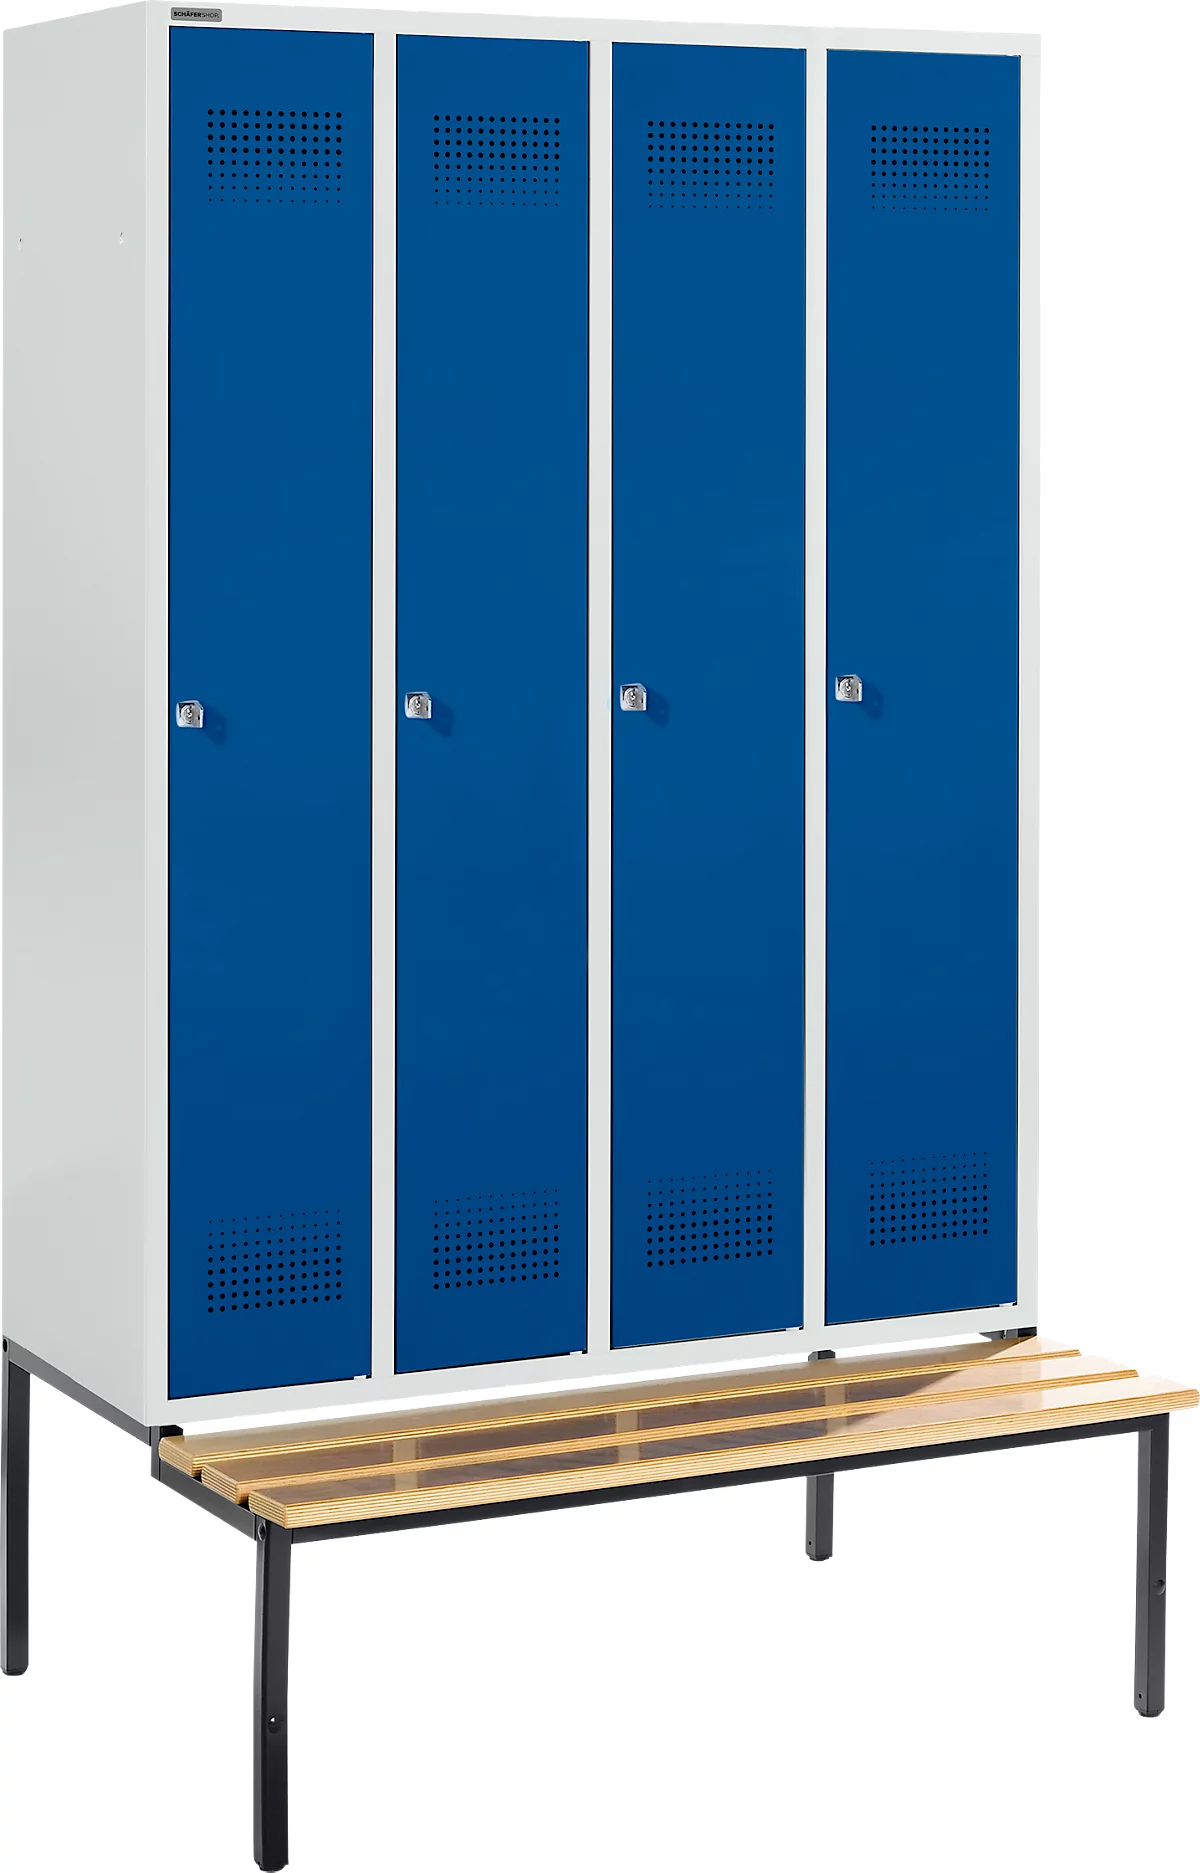 Schäfer Shop Genius Taquilla con banco, 4 compartimentos, cerradura de cilindro, gris luminoso/azul genciana